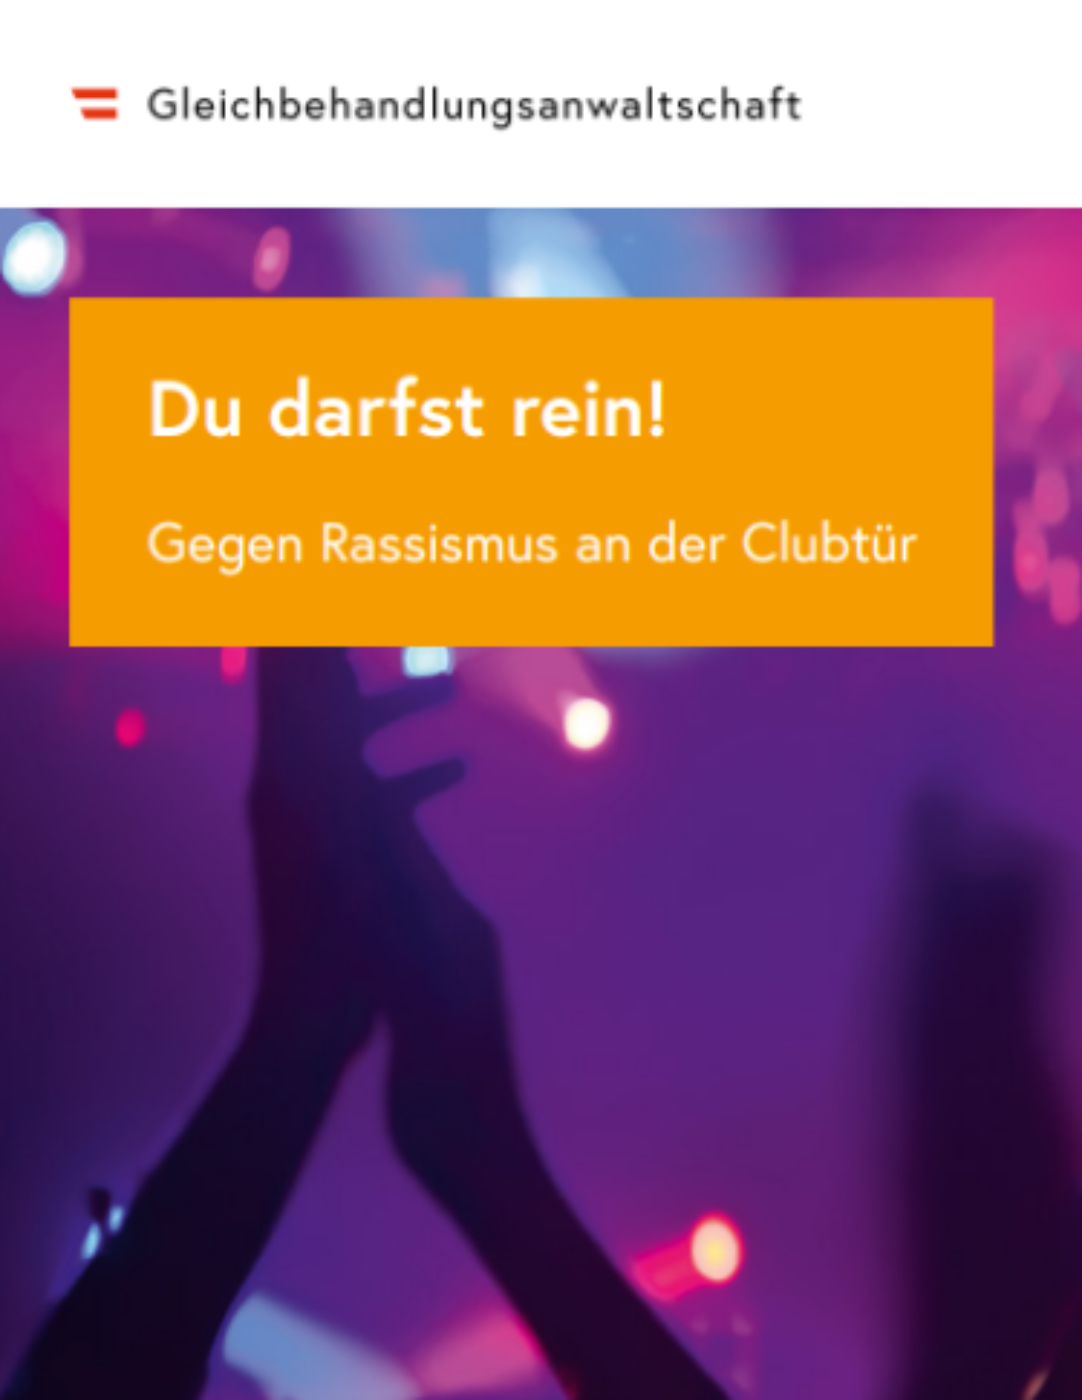 Deckblatt der Broschüre "Du darfst rein!" zeigt tanzende Menschen im Club.